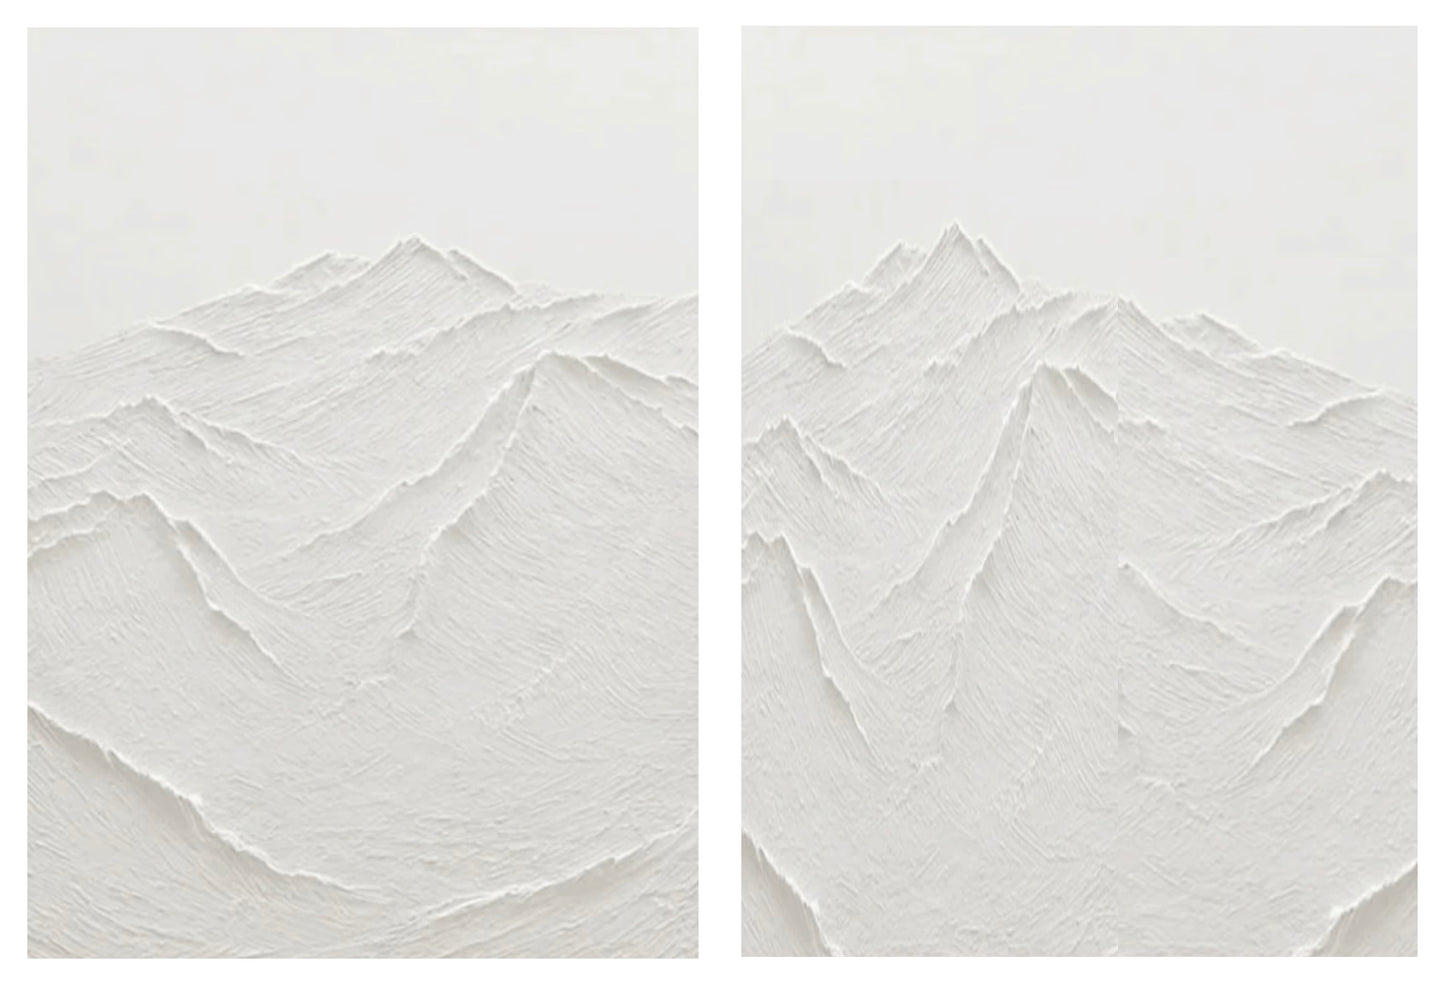 Pittura a olio astratta del salone delle catene montuose strutturate bianche 3D